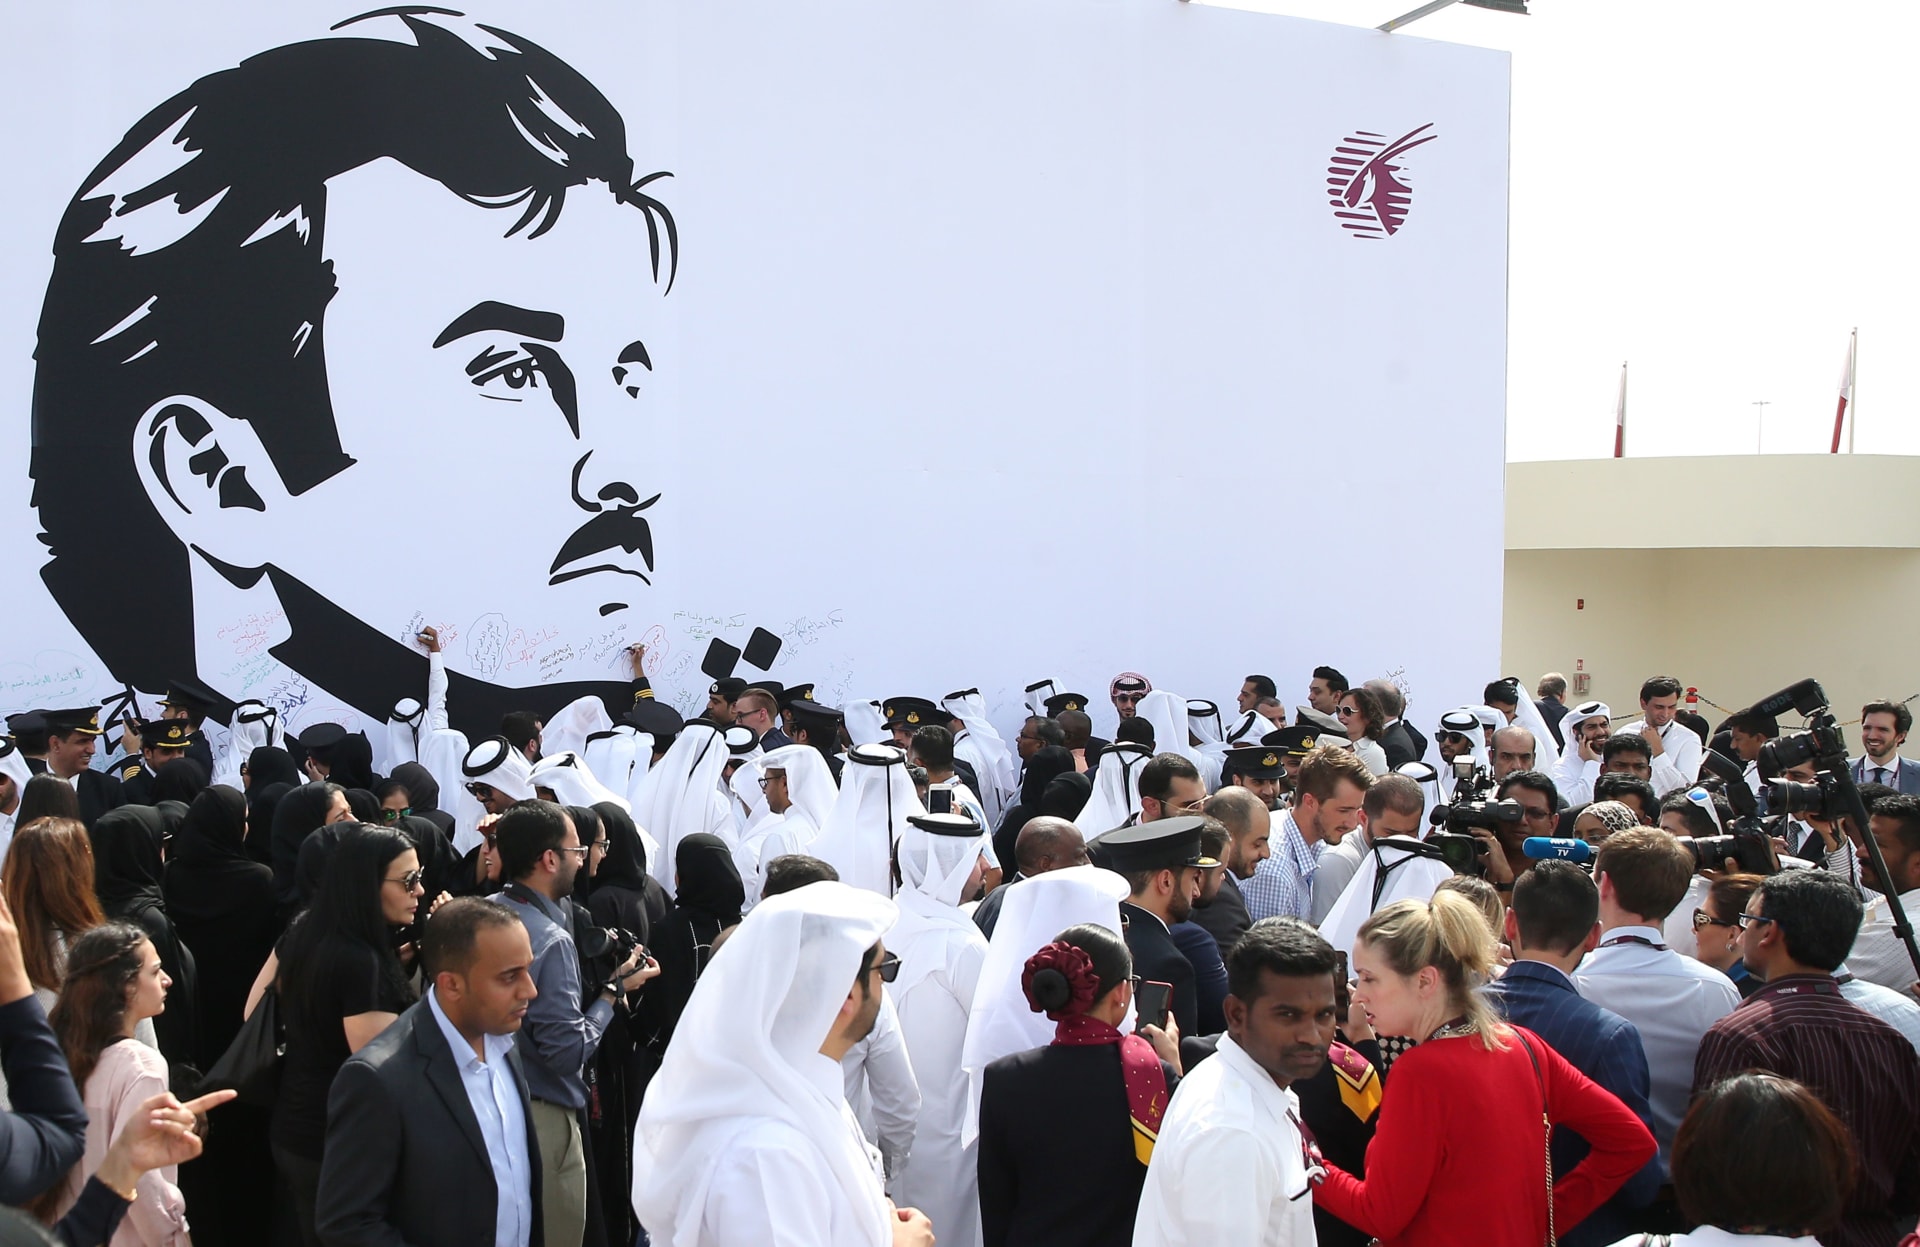 قطر: الحصار زاد من "اللحمة" الداخلية.. و"قوة" اقتصادنا حافظت على استقرارنا المالي